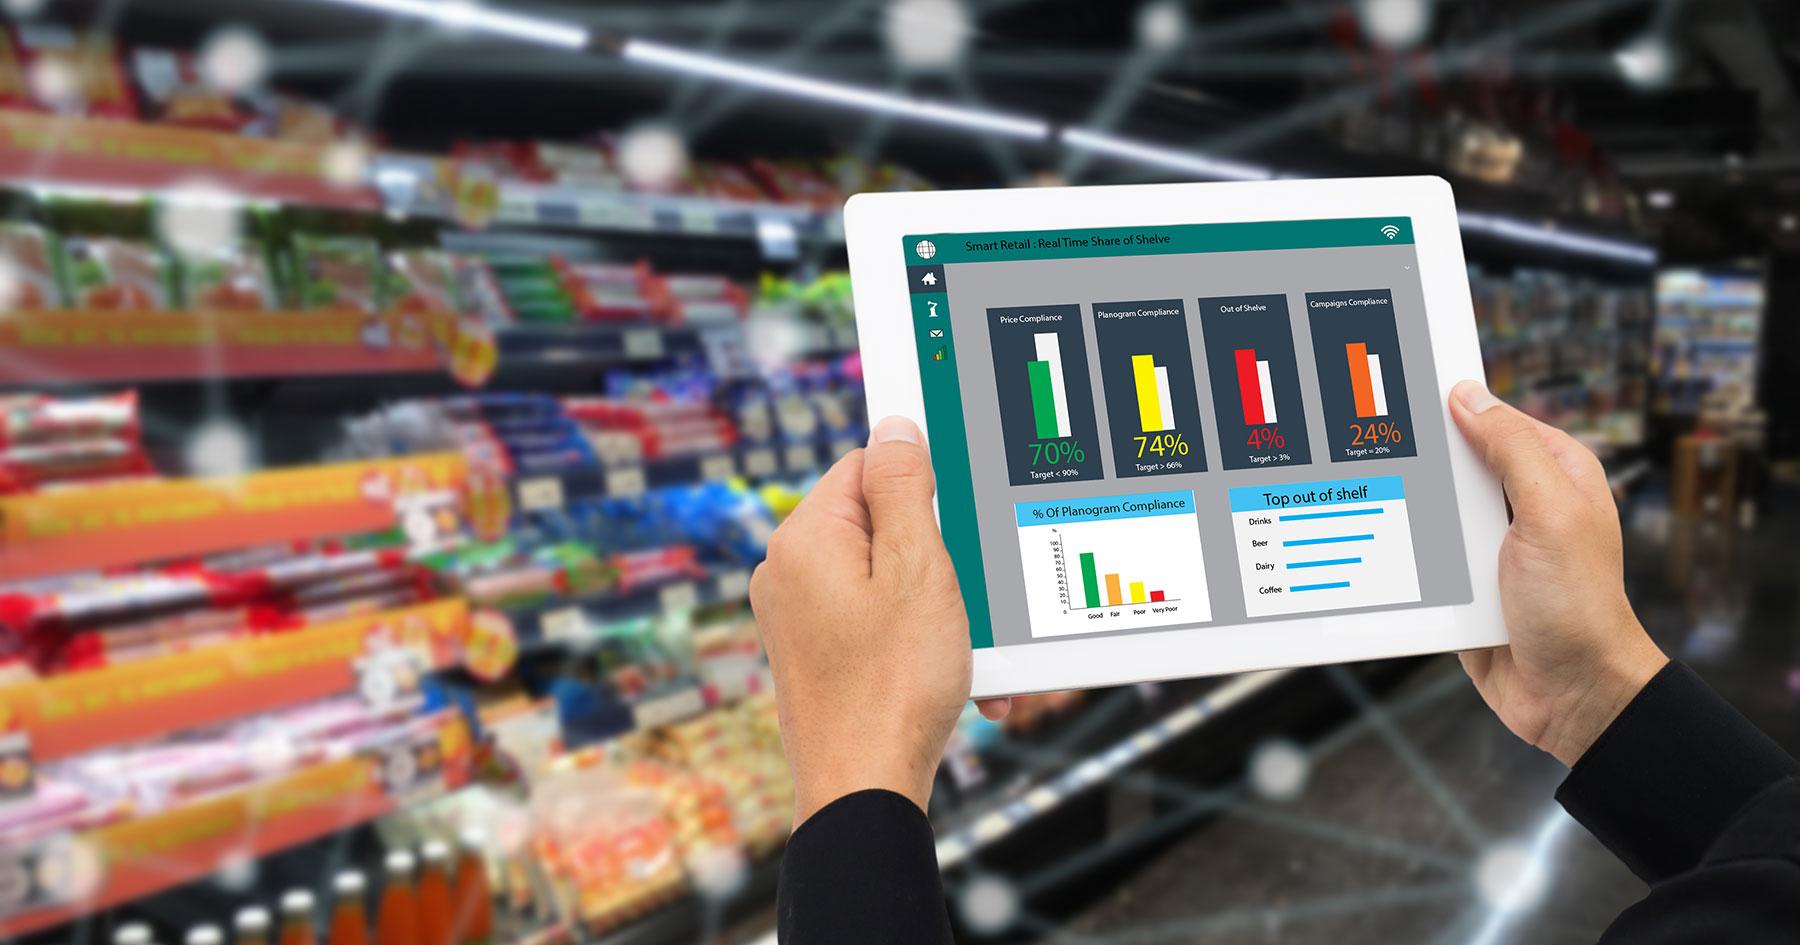 O uso de inteligência artificial em supermercados